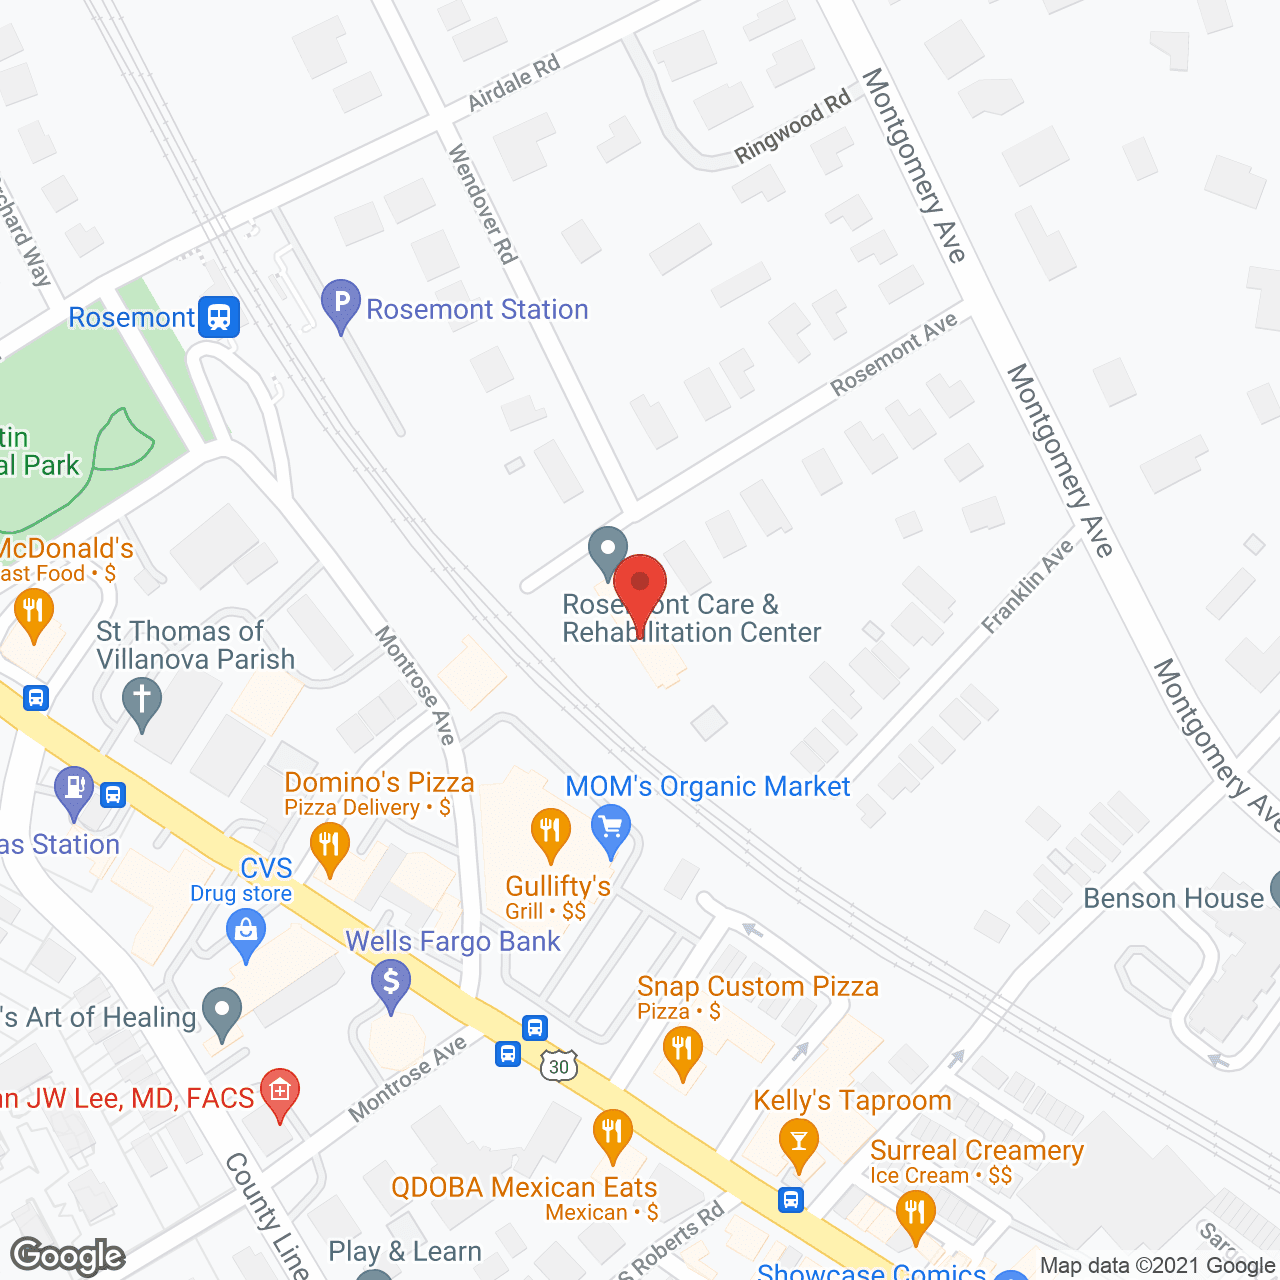 Golden LivingCenter - Rosemont in google map